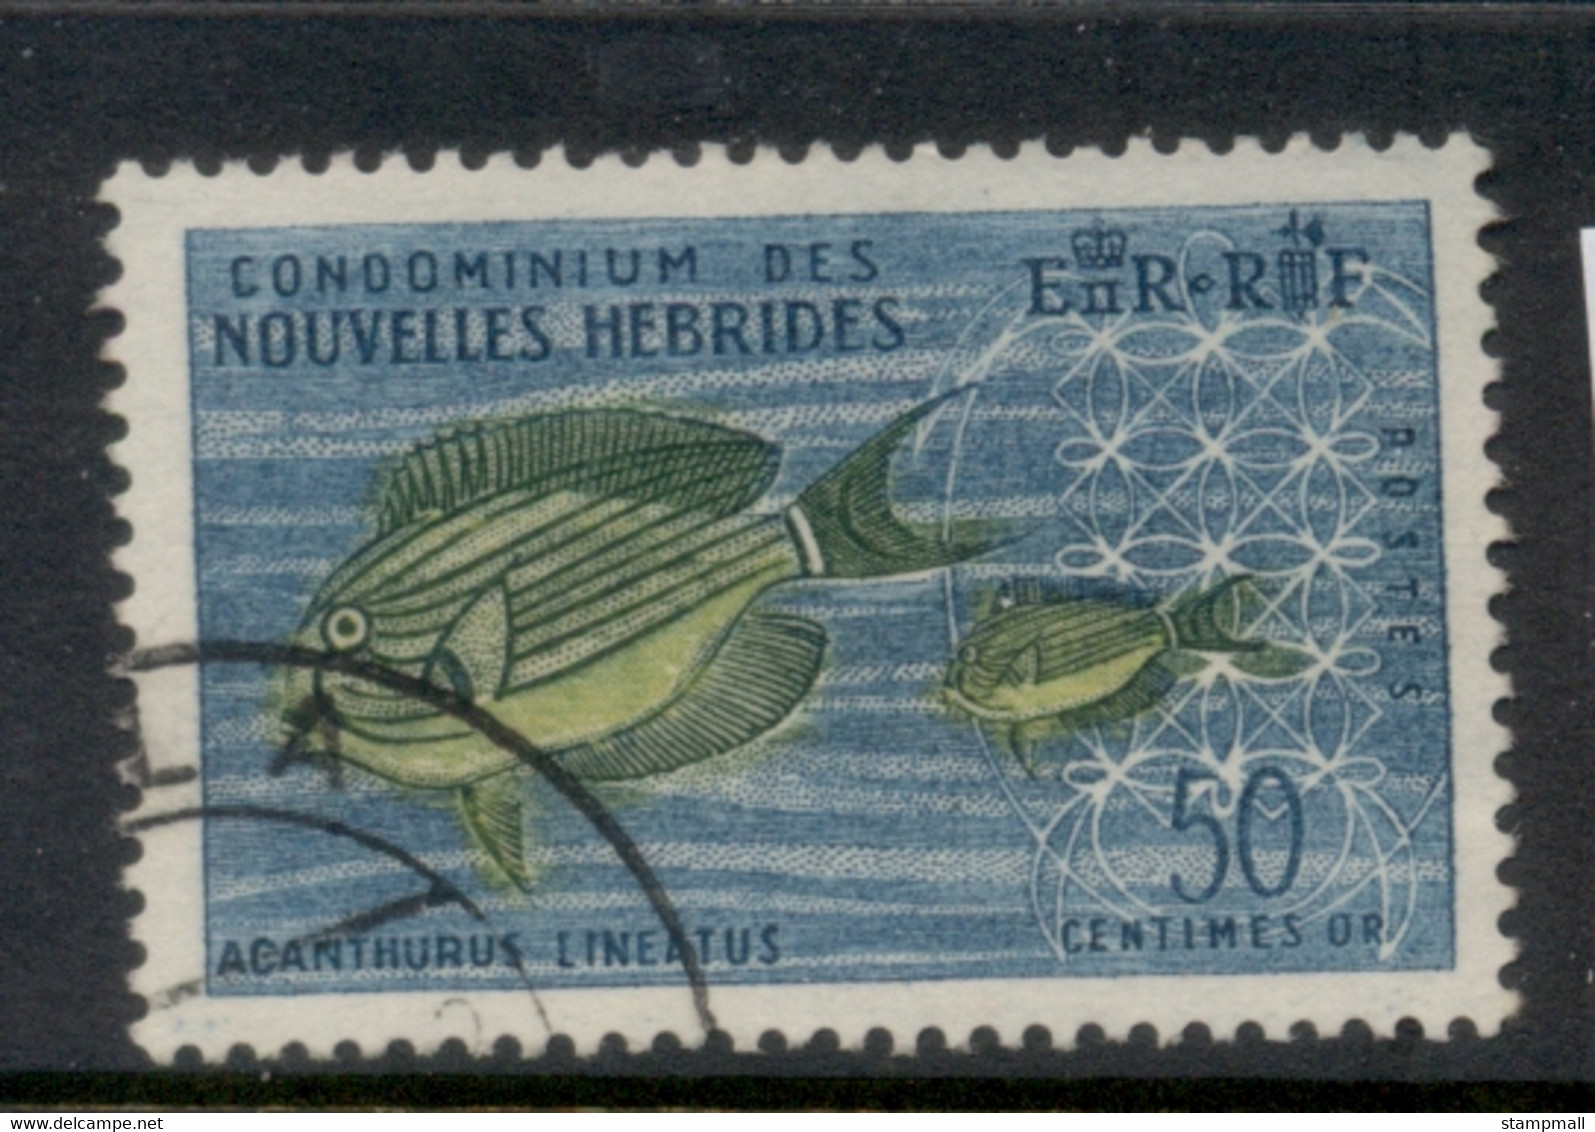 New Hebrides (Fr) 1963-67 Pictorials 50c FU - Gebraucht